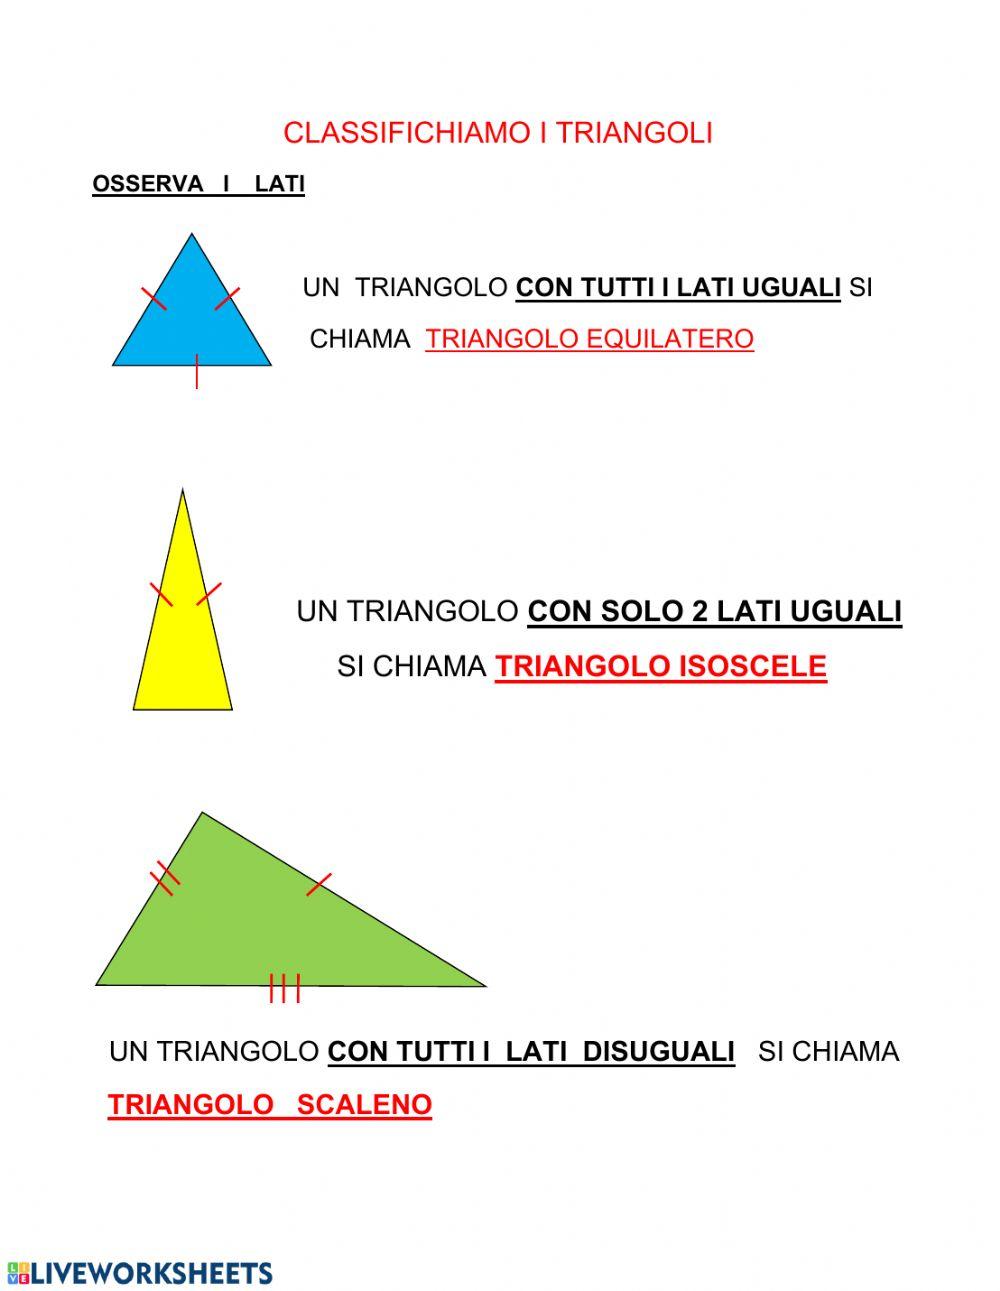 Il triangolo